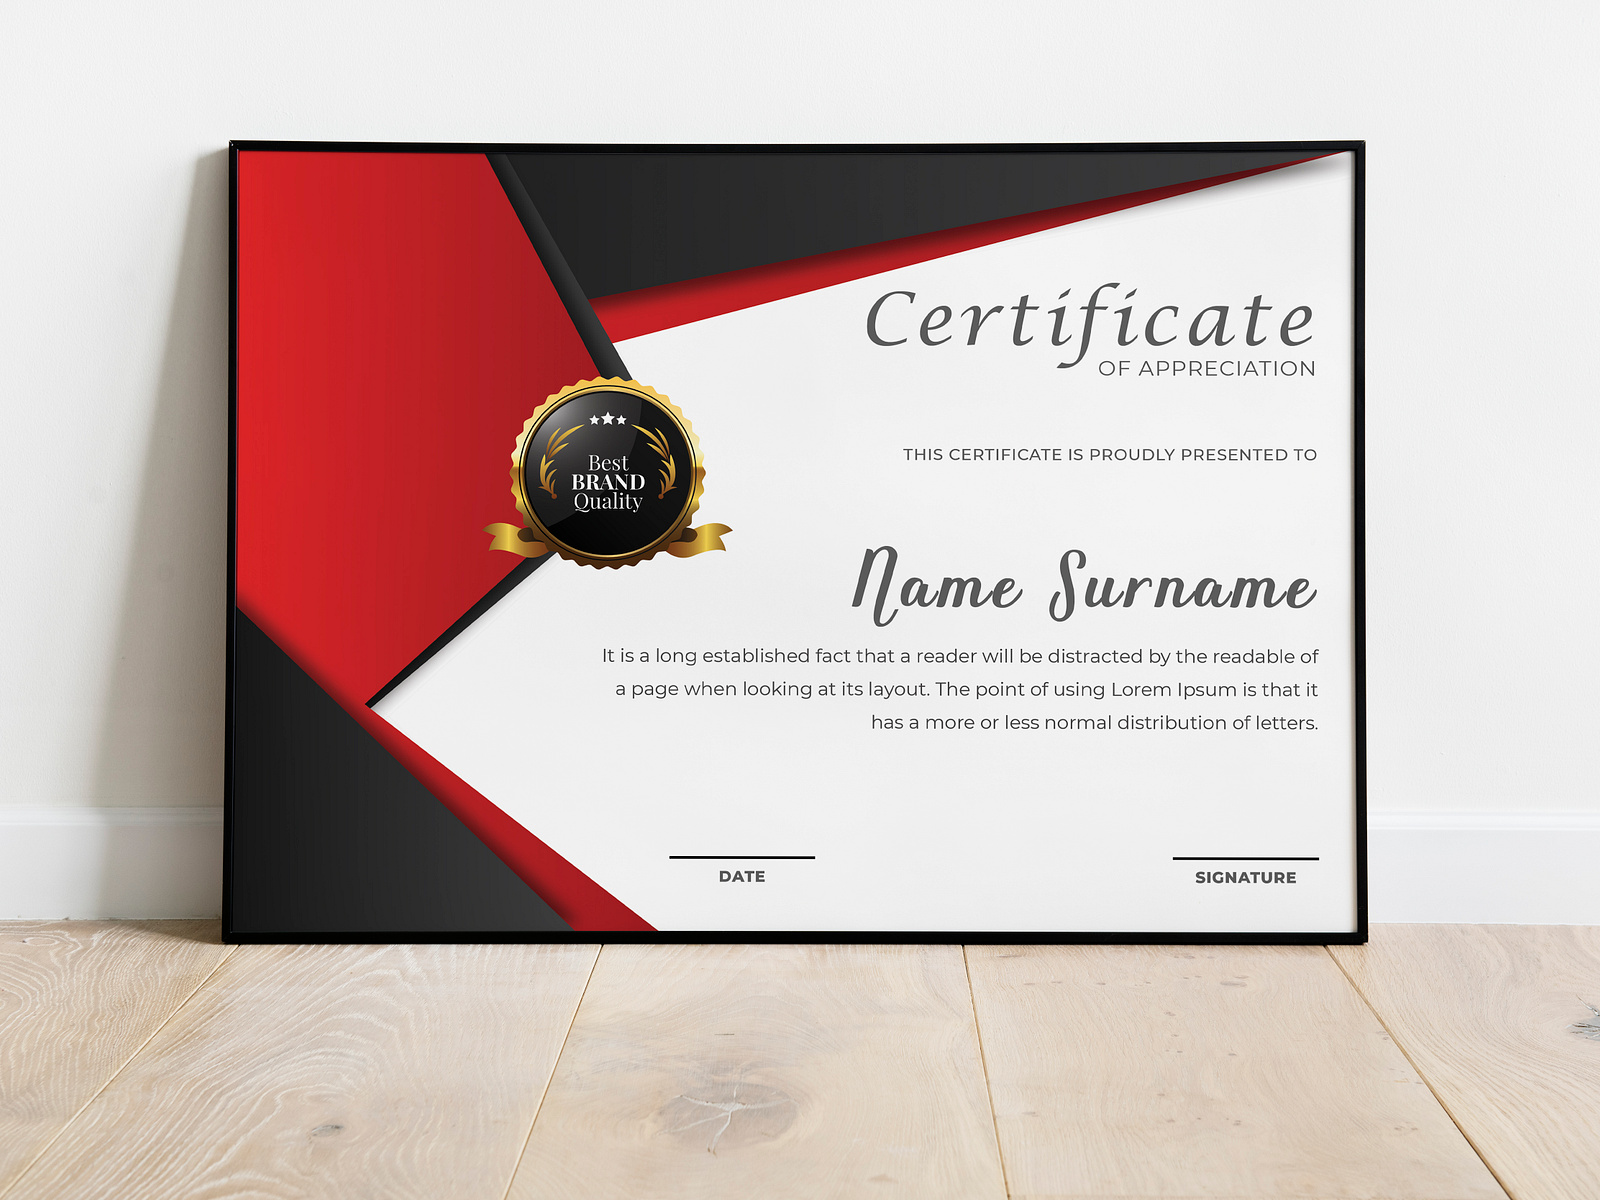 Appreciation Certificate by Digital IT 247 on Dribbble